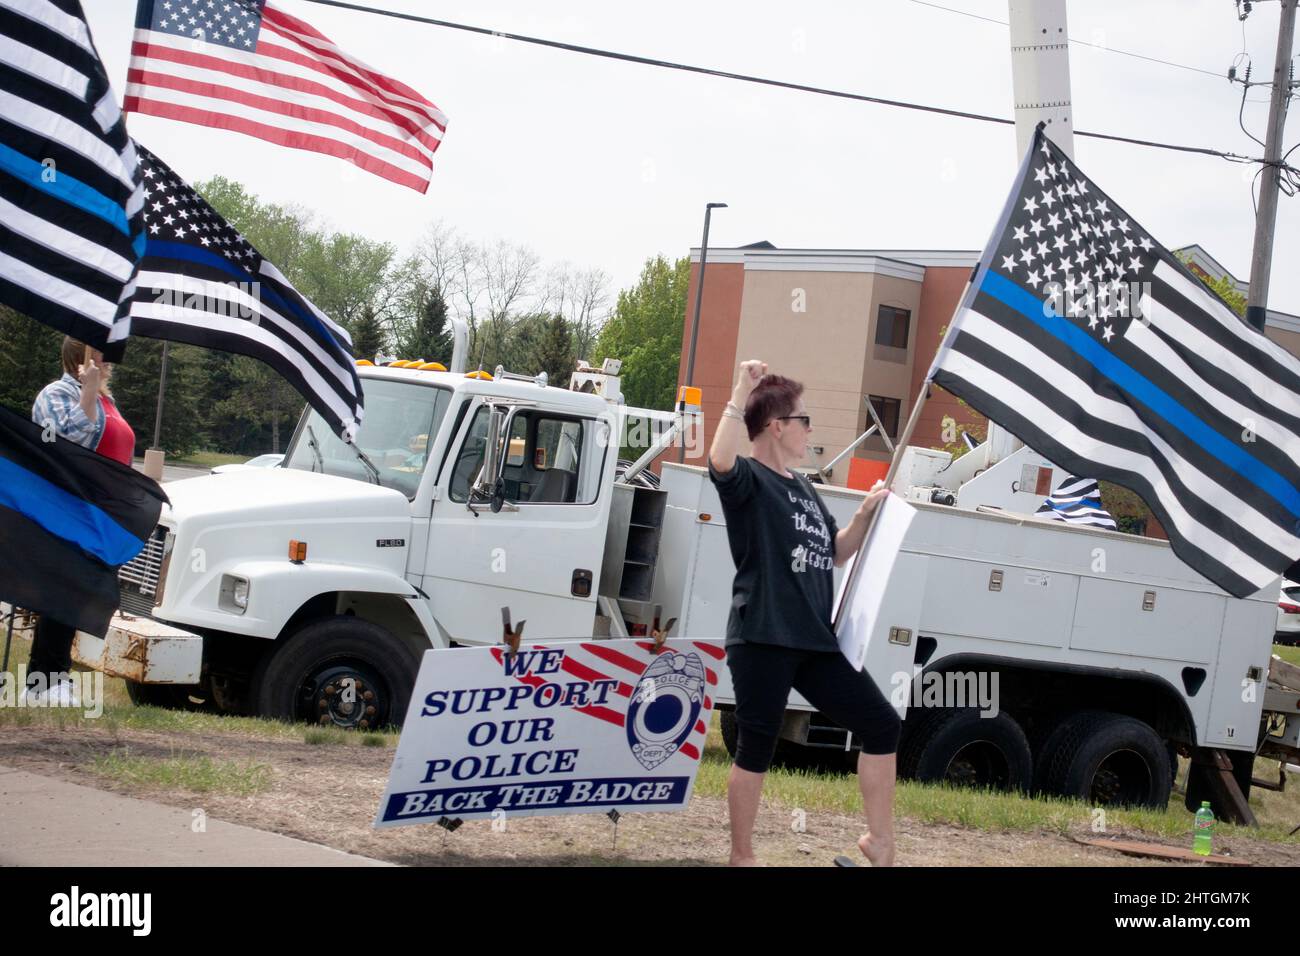 Femmes avec drapeau américain et drapeaux avec une ligne bleue pour soutenir la police manifestant le long de la route. Anoka Minnesota MN États-Unis Banque D'Images